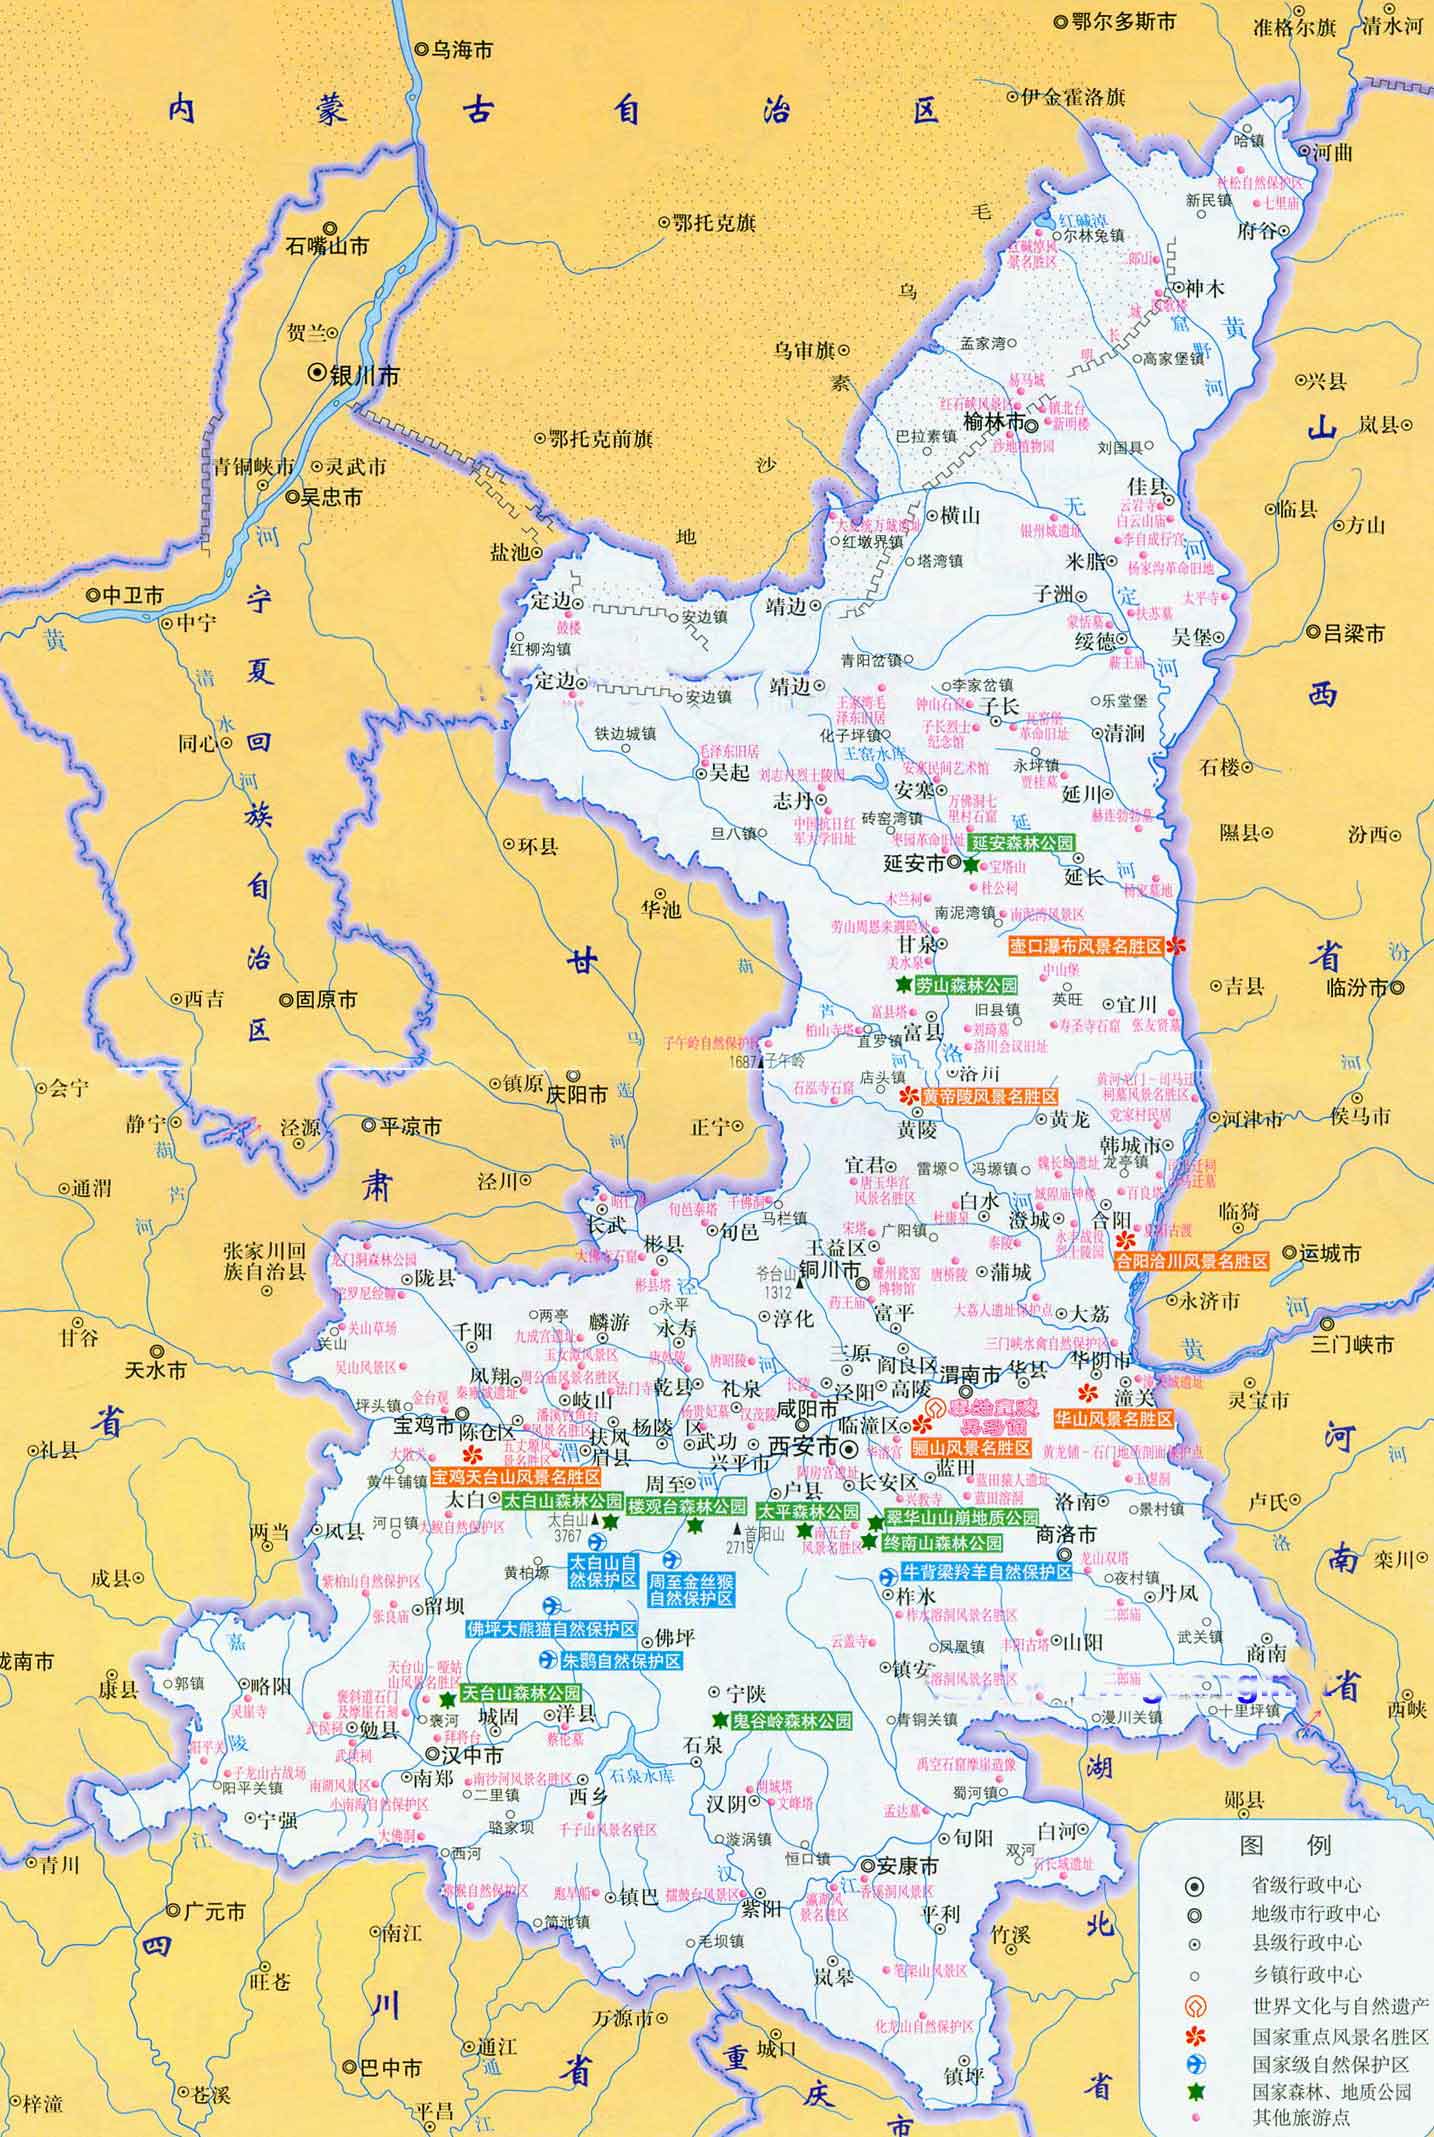 榆林市旅游资源分布图_榆林市旅游地图_三秦游网